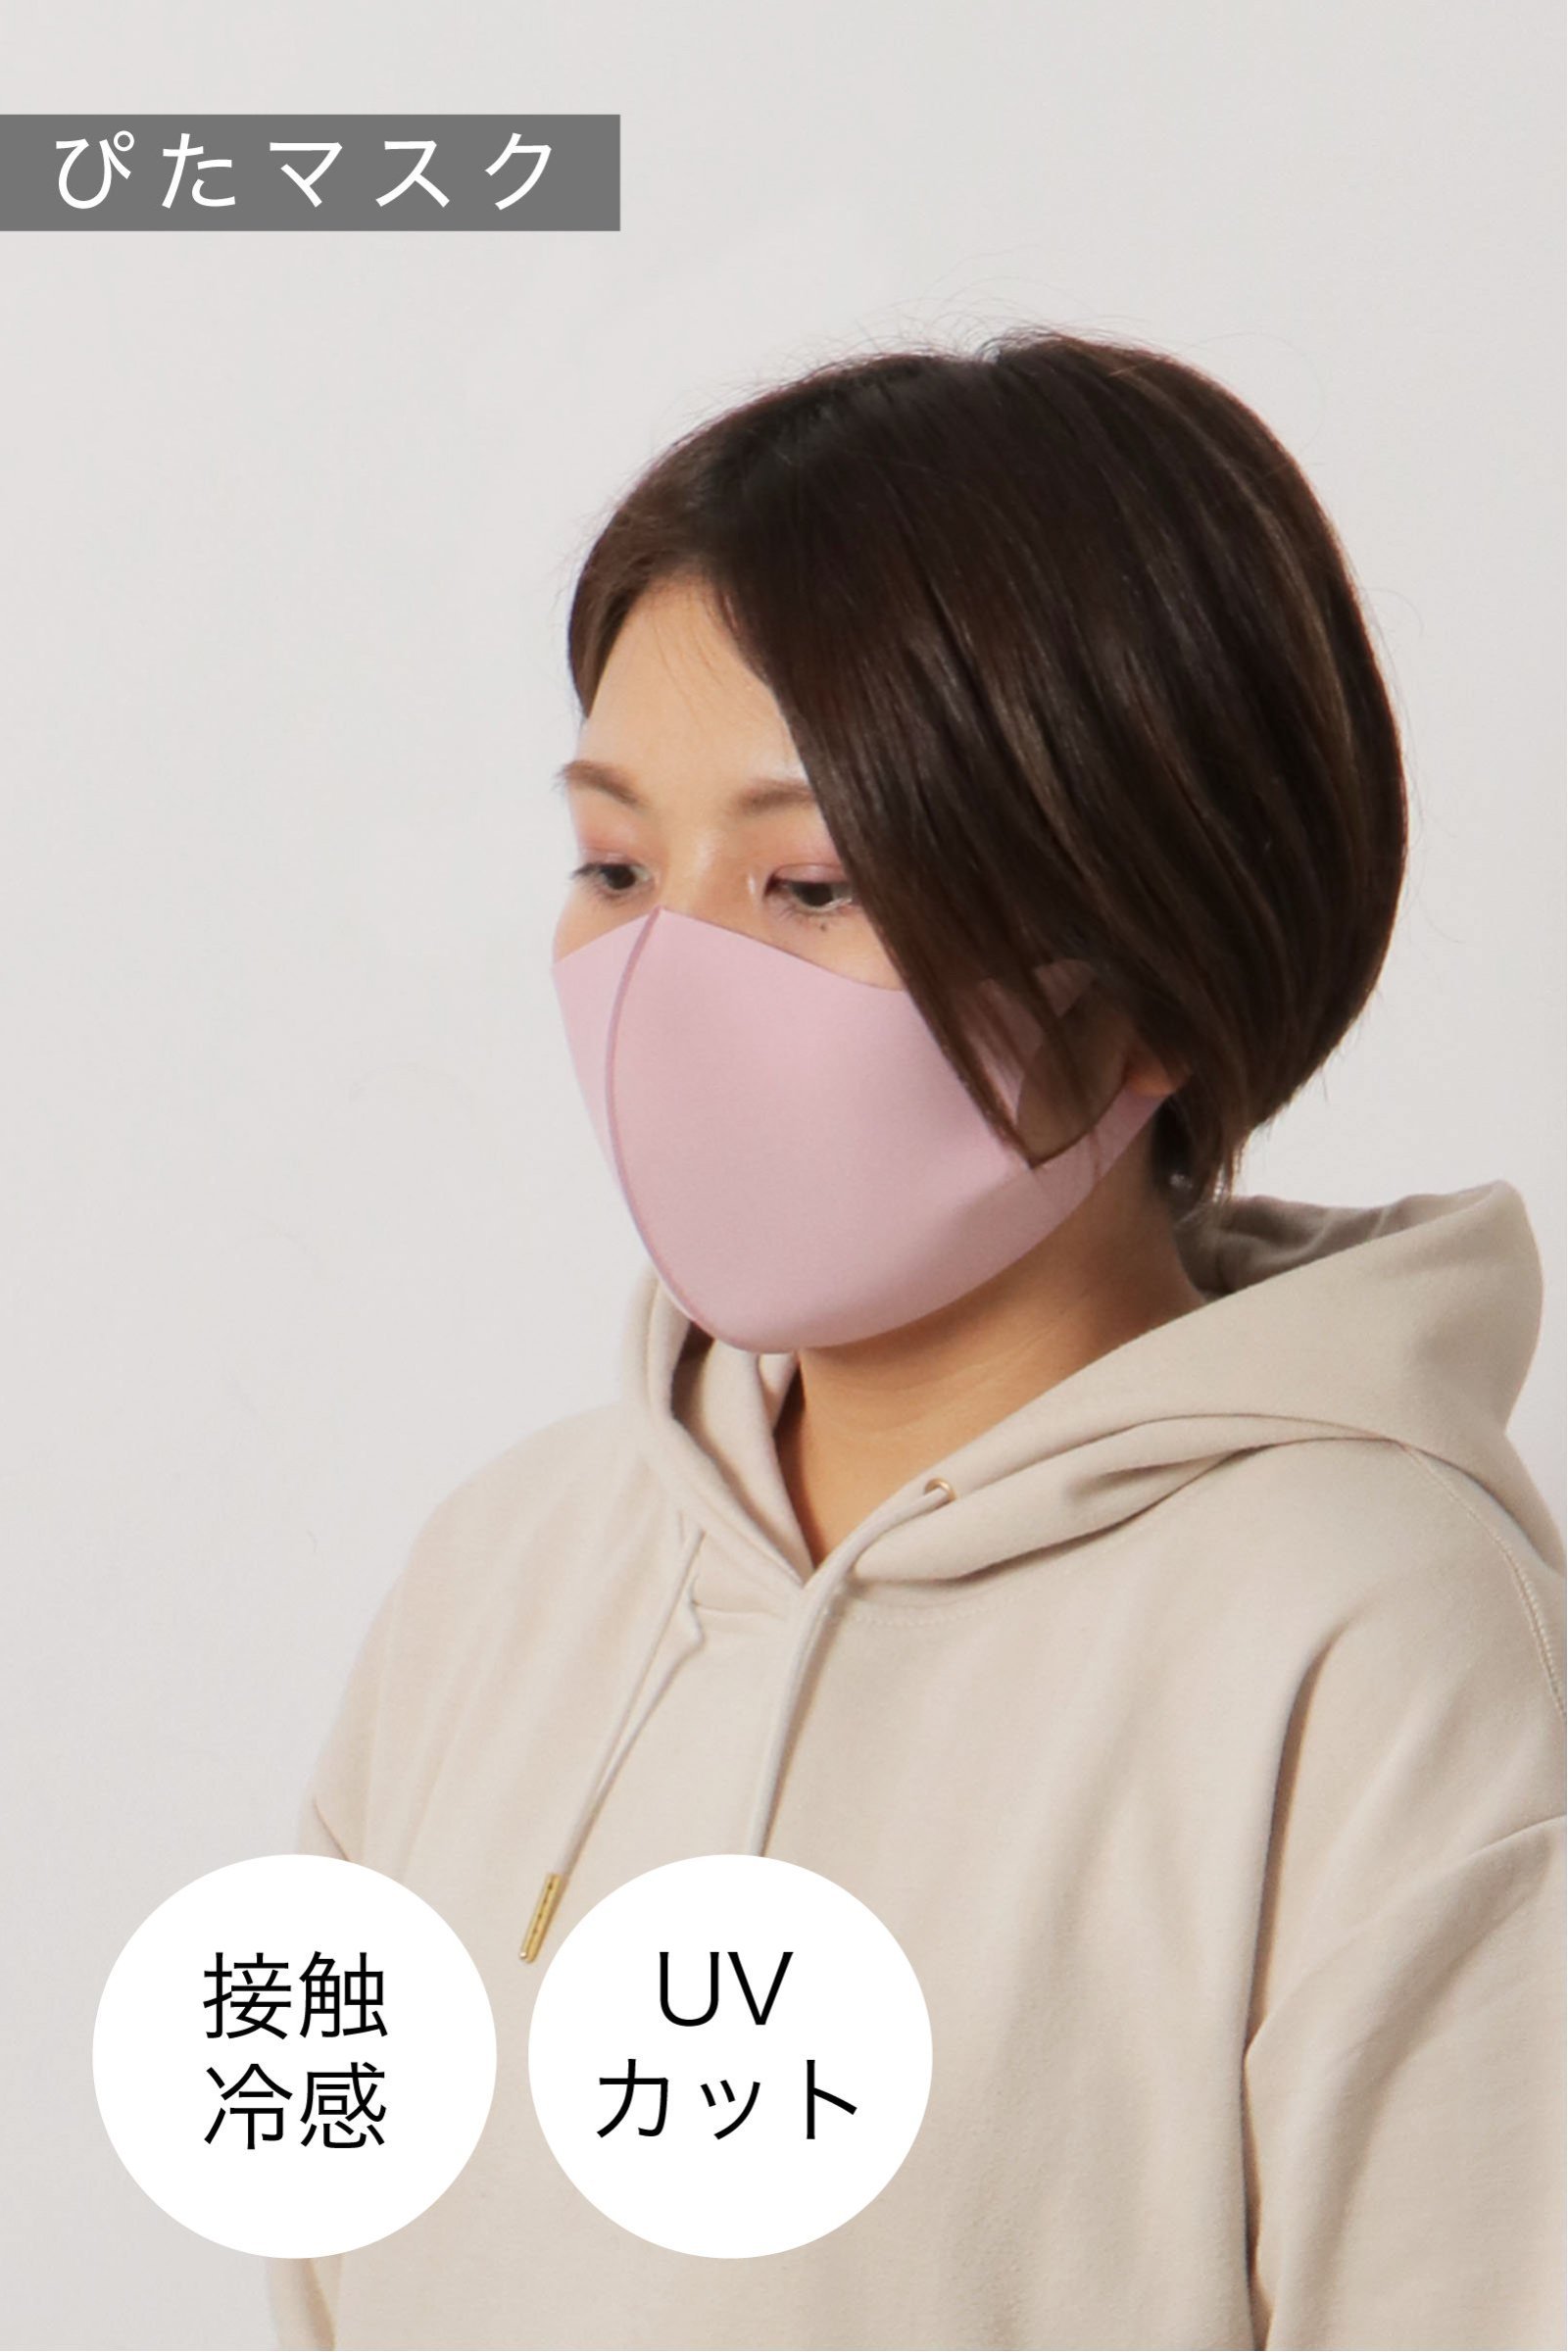 【おとな用】 ぴたマスク(3枚セット)  ピンクホワイト